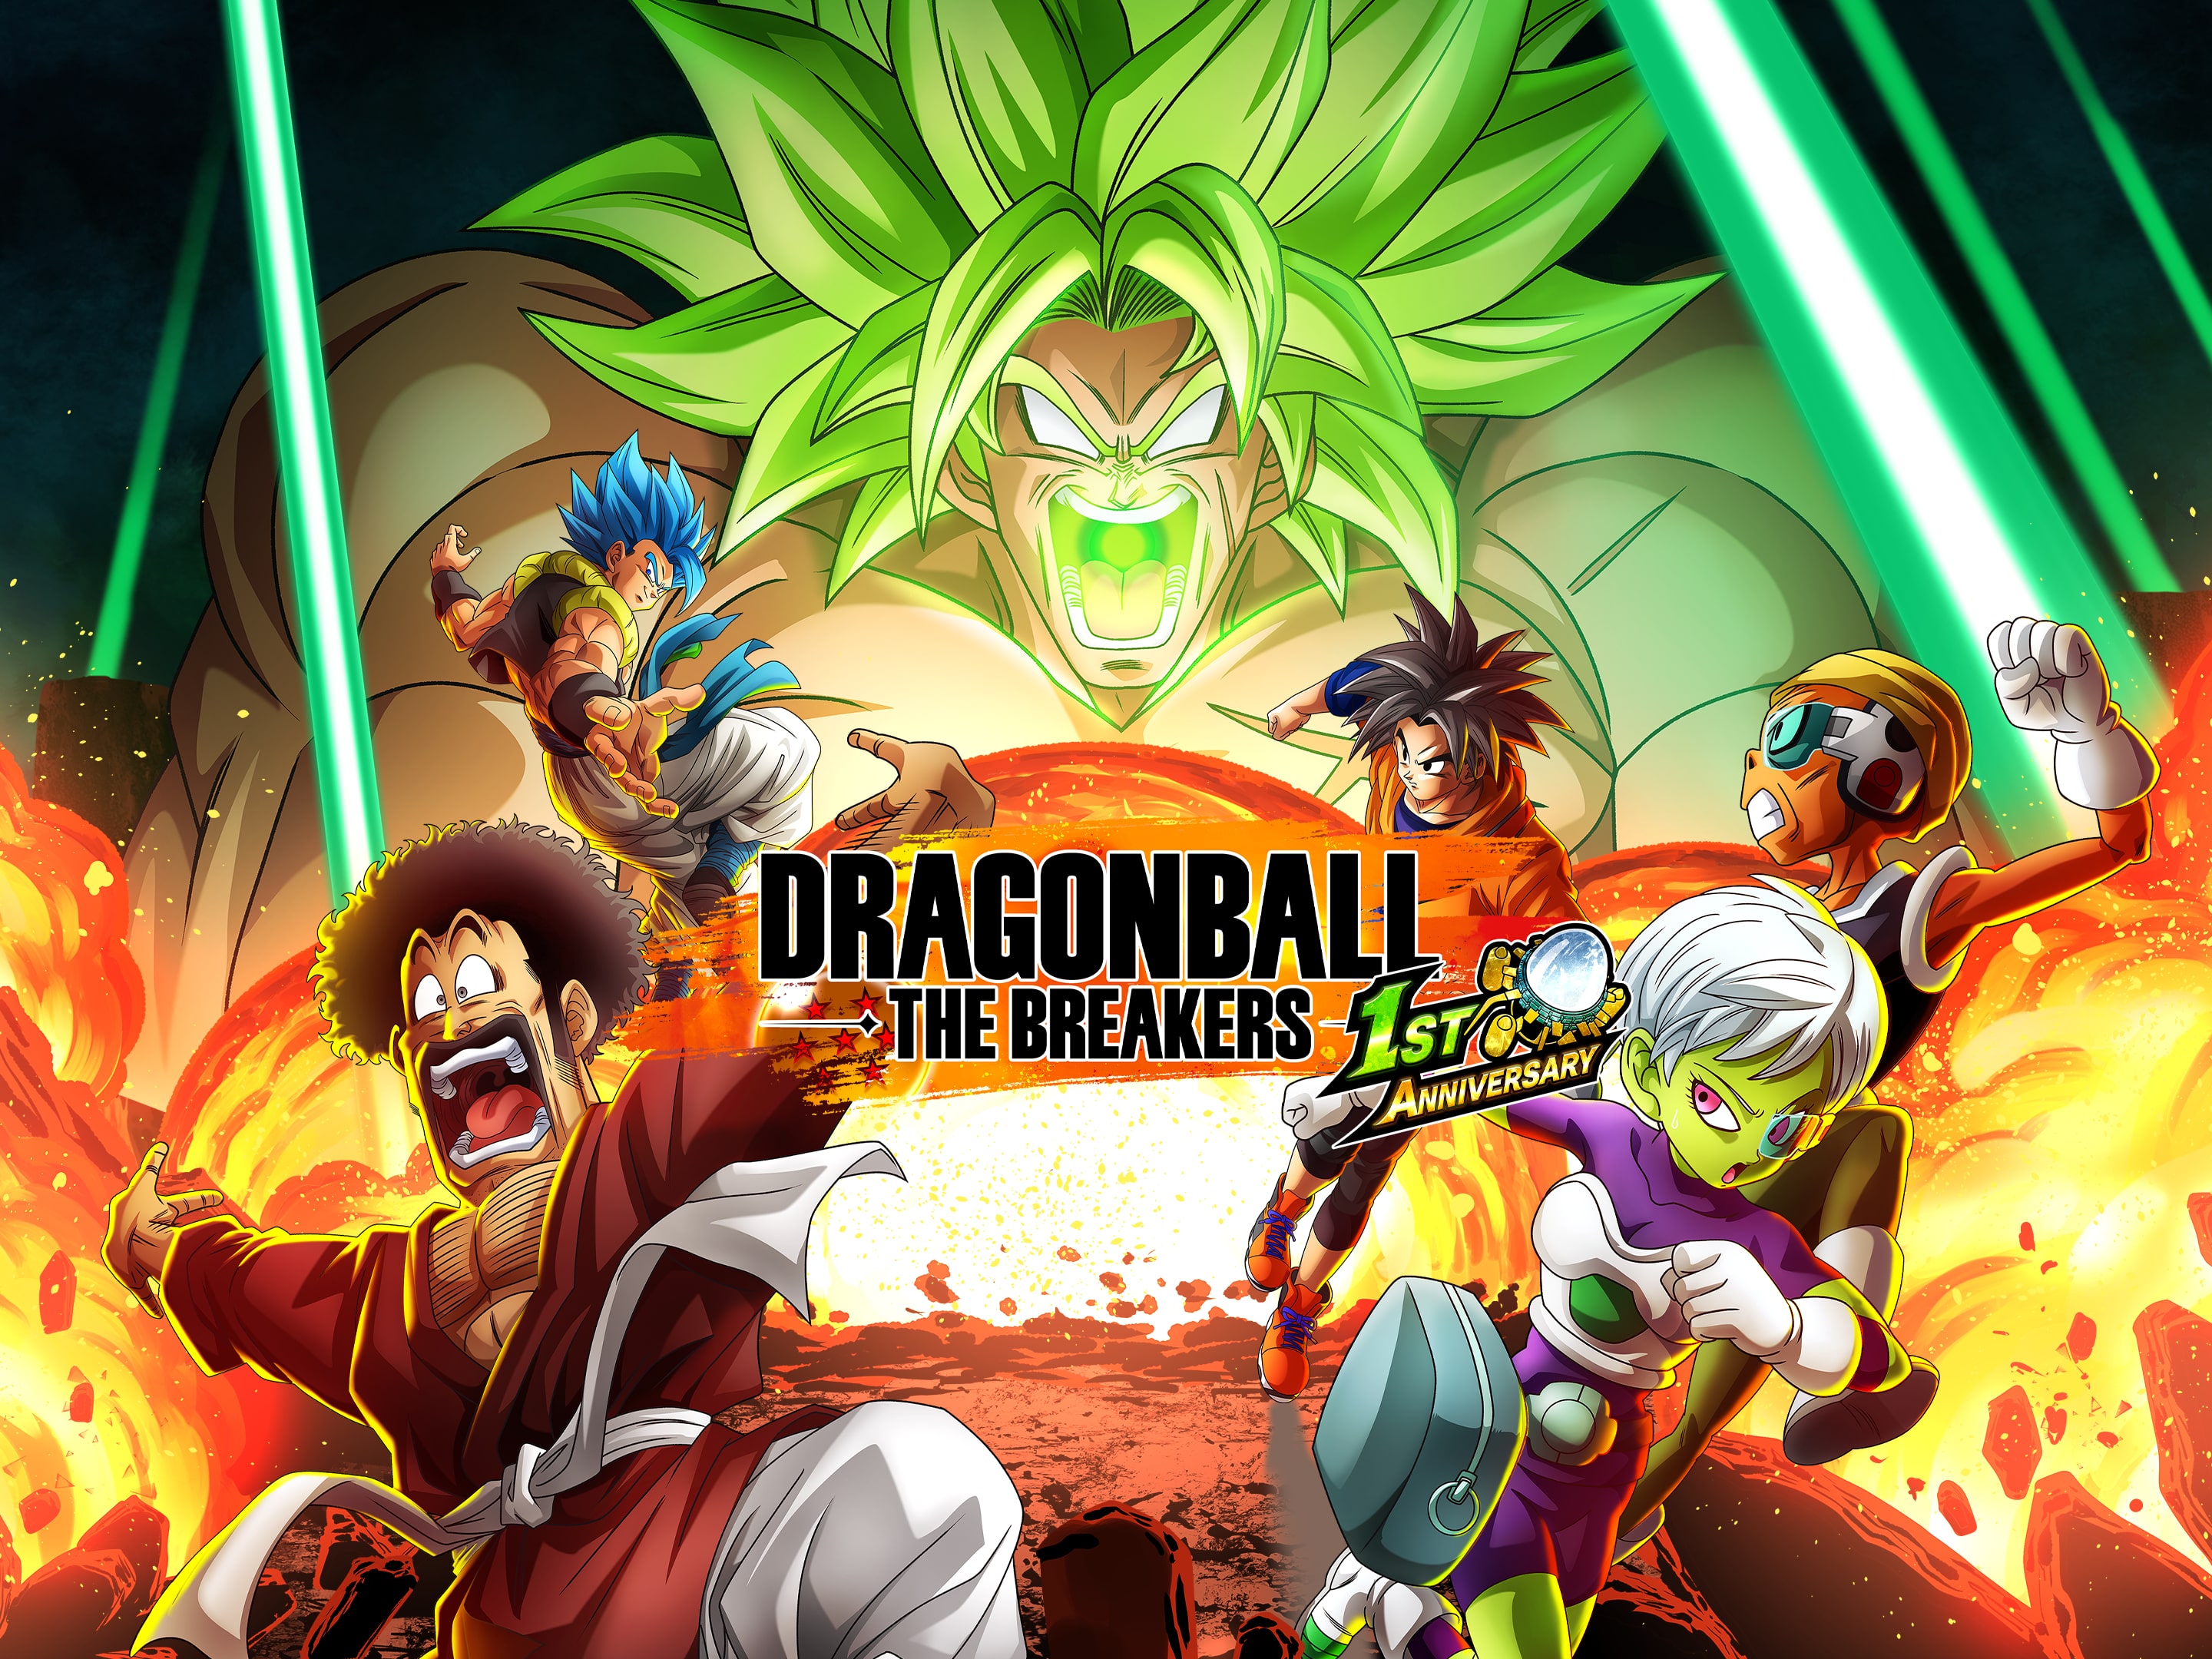 Jogo Dragon Ball The Breakers: (Edição Especial) - PS4 - EletroYou 